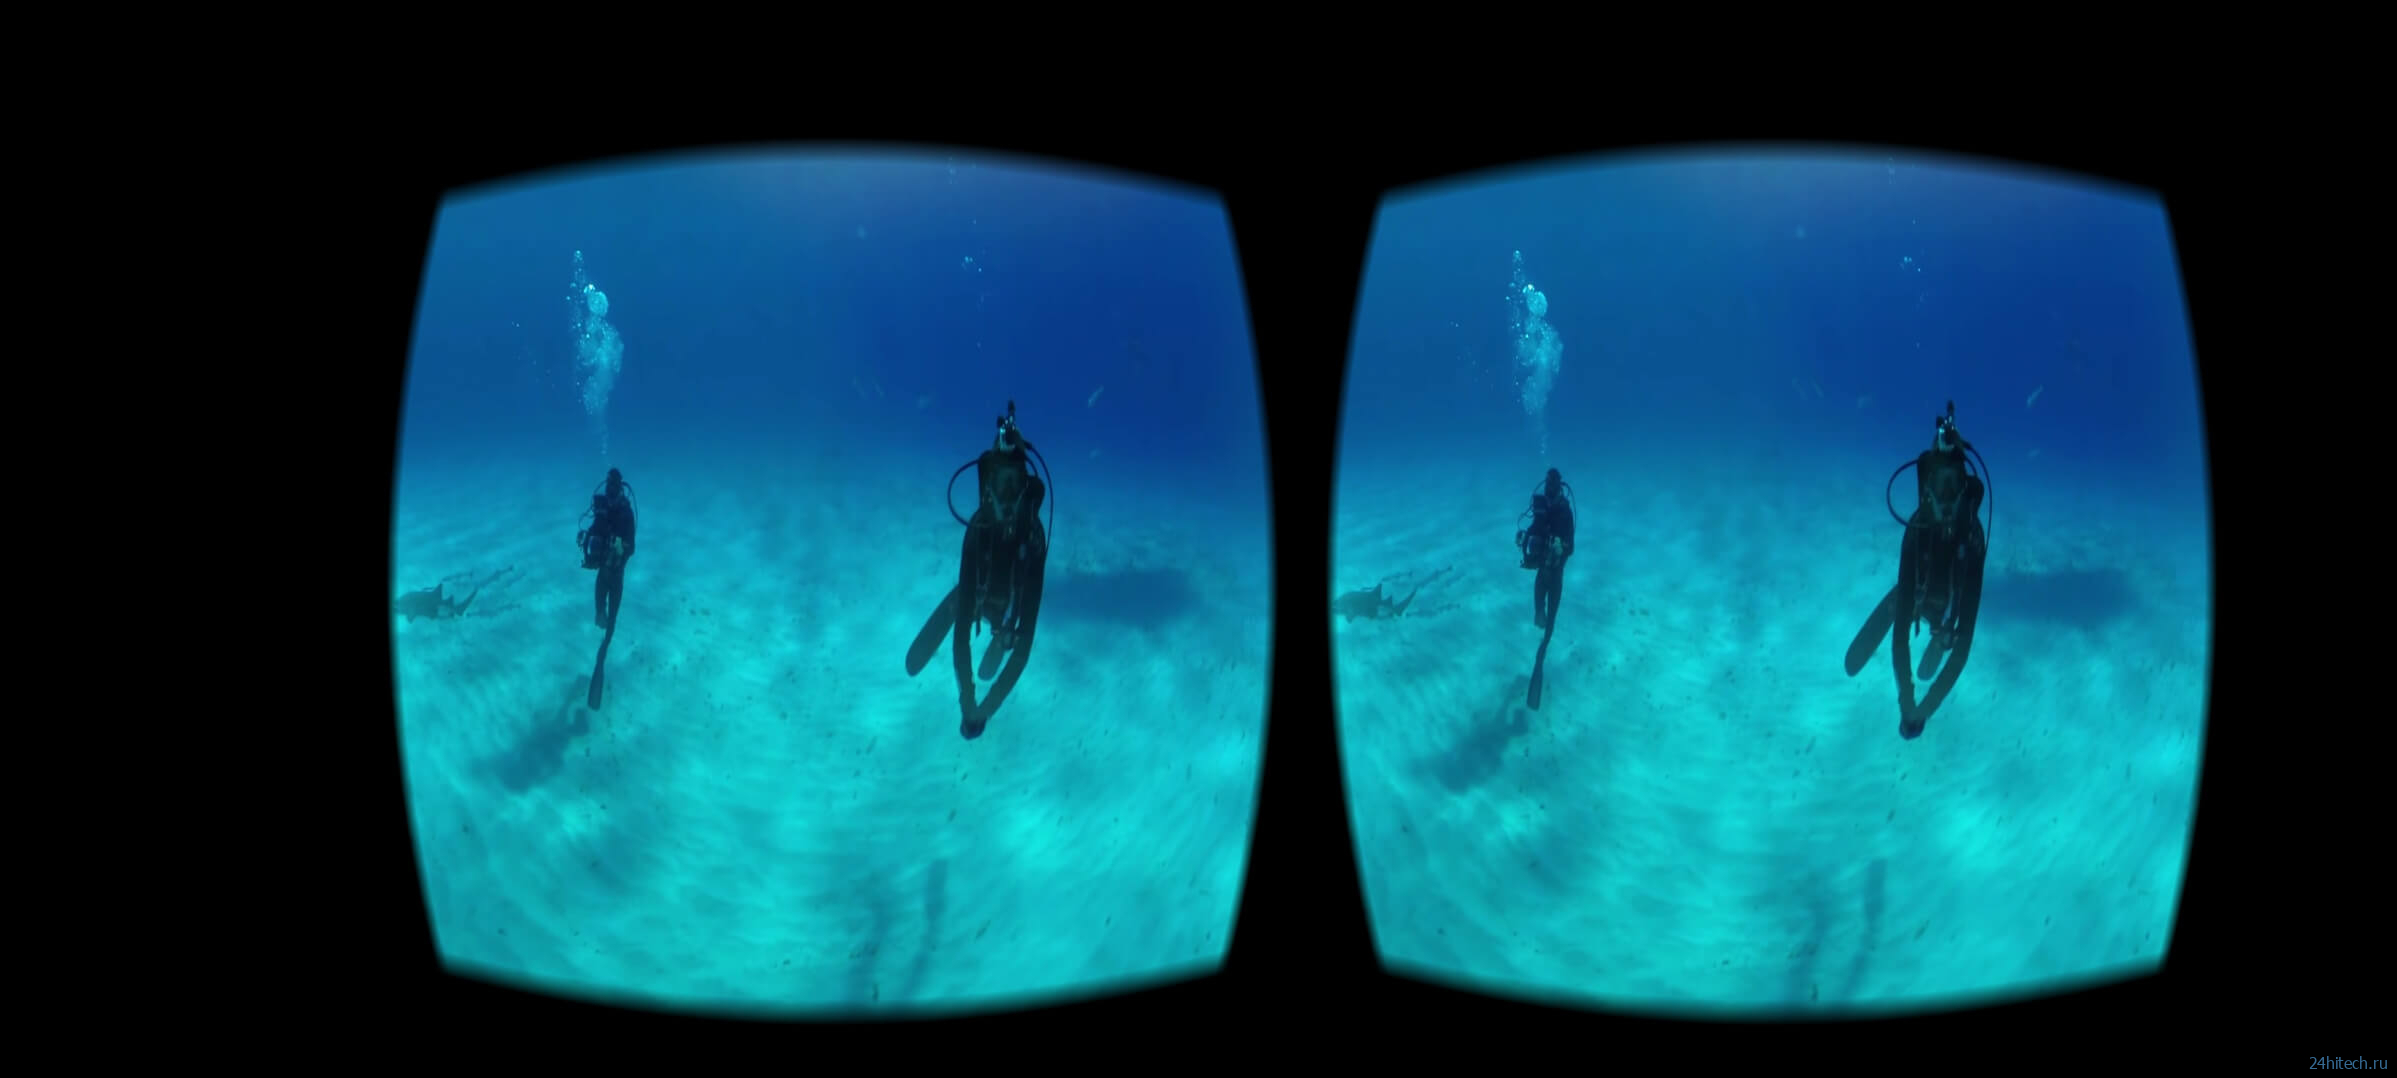 Виртуальная реальность на телефоне: как играть и смотреть VR-видео